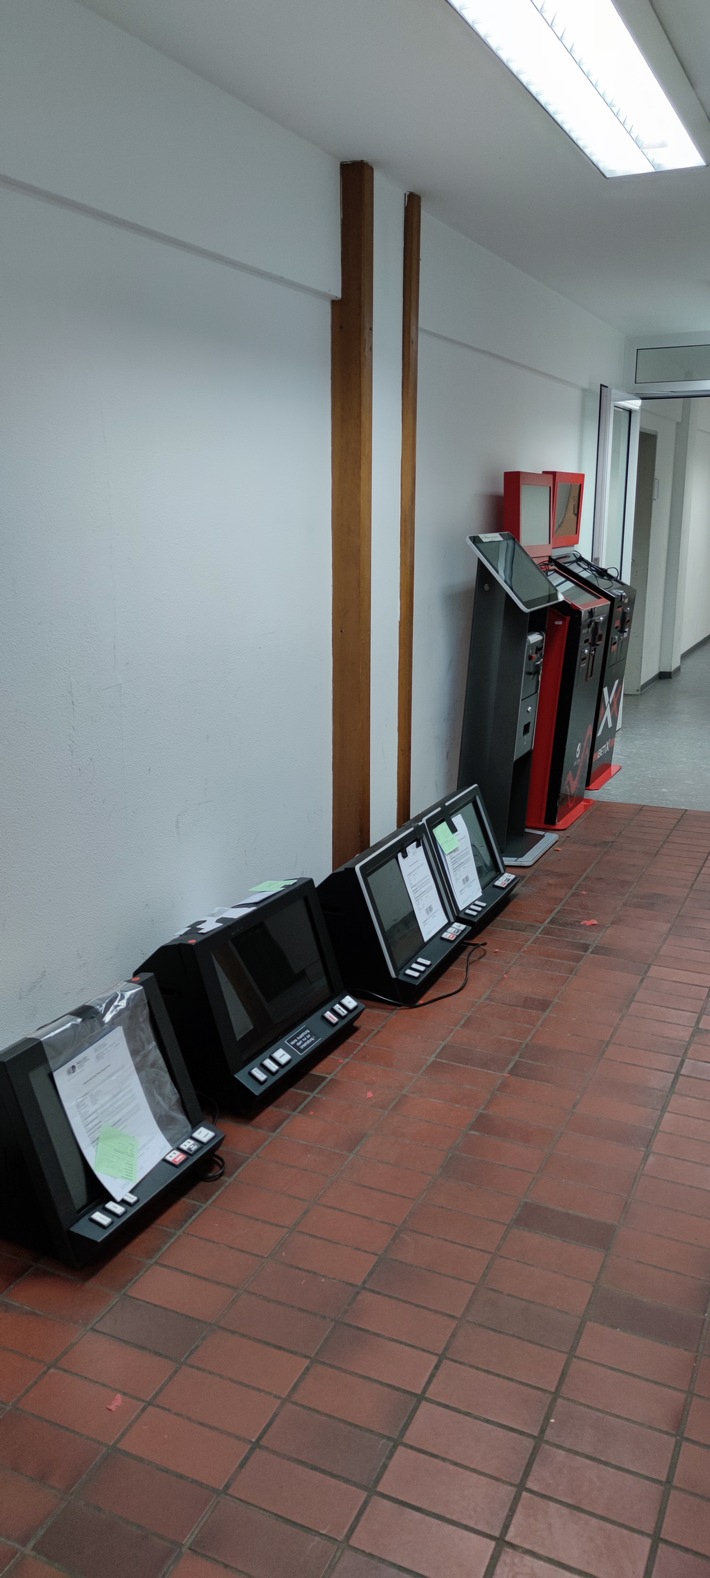 POL-DO: Bekämpfung der kriminellen Strukturen in der Nordstadt - Polizei und Stadt stellen zehn Glücksspielautomaten sicher